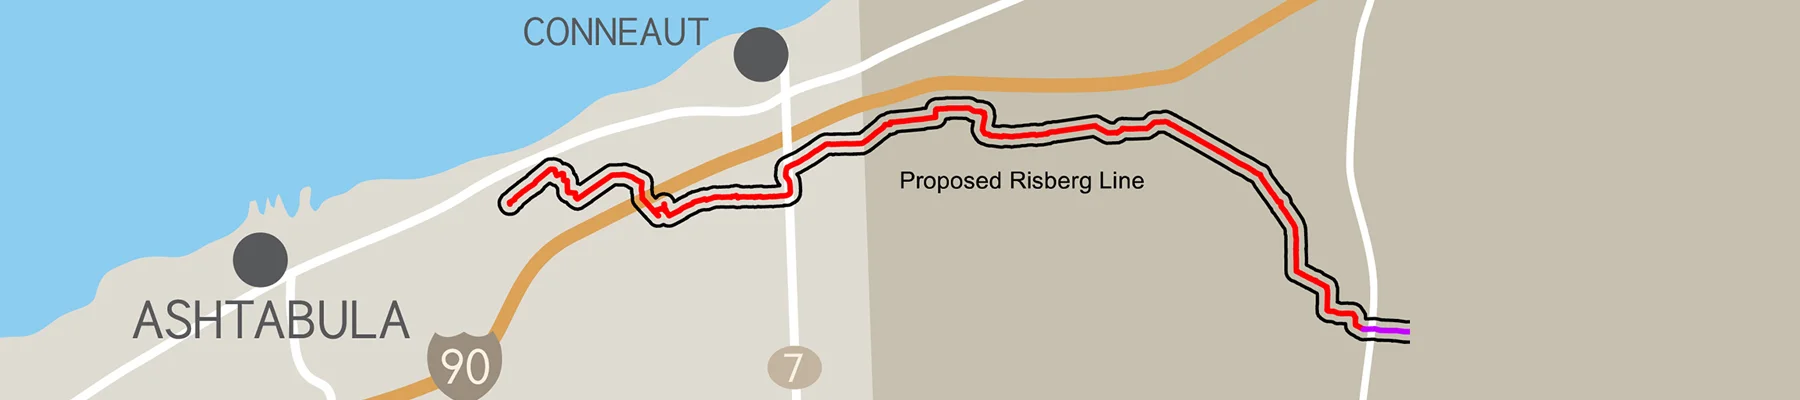 Risberg pipeline map